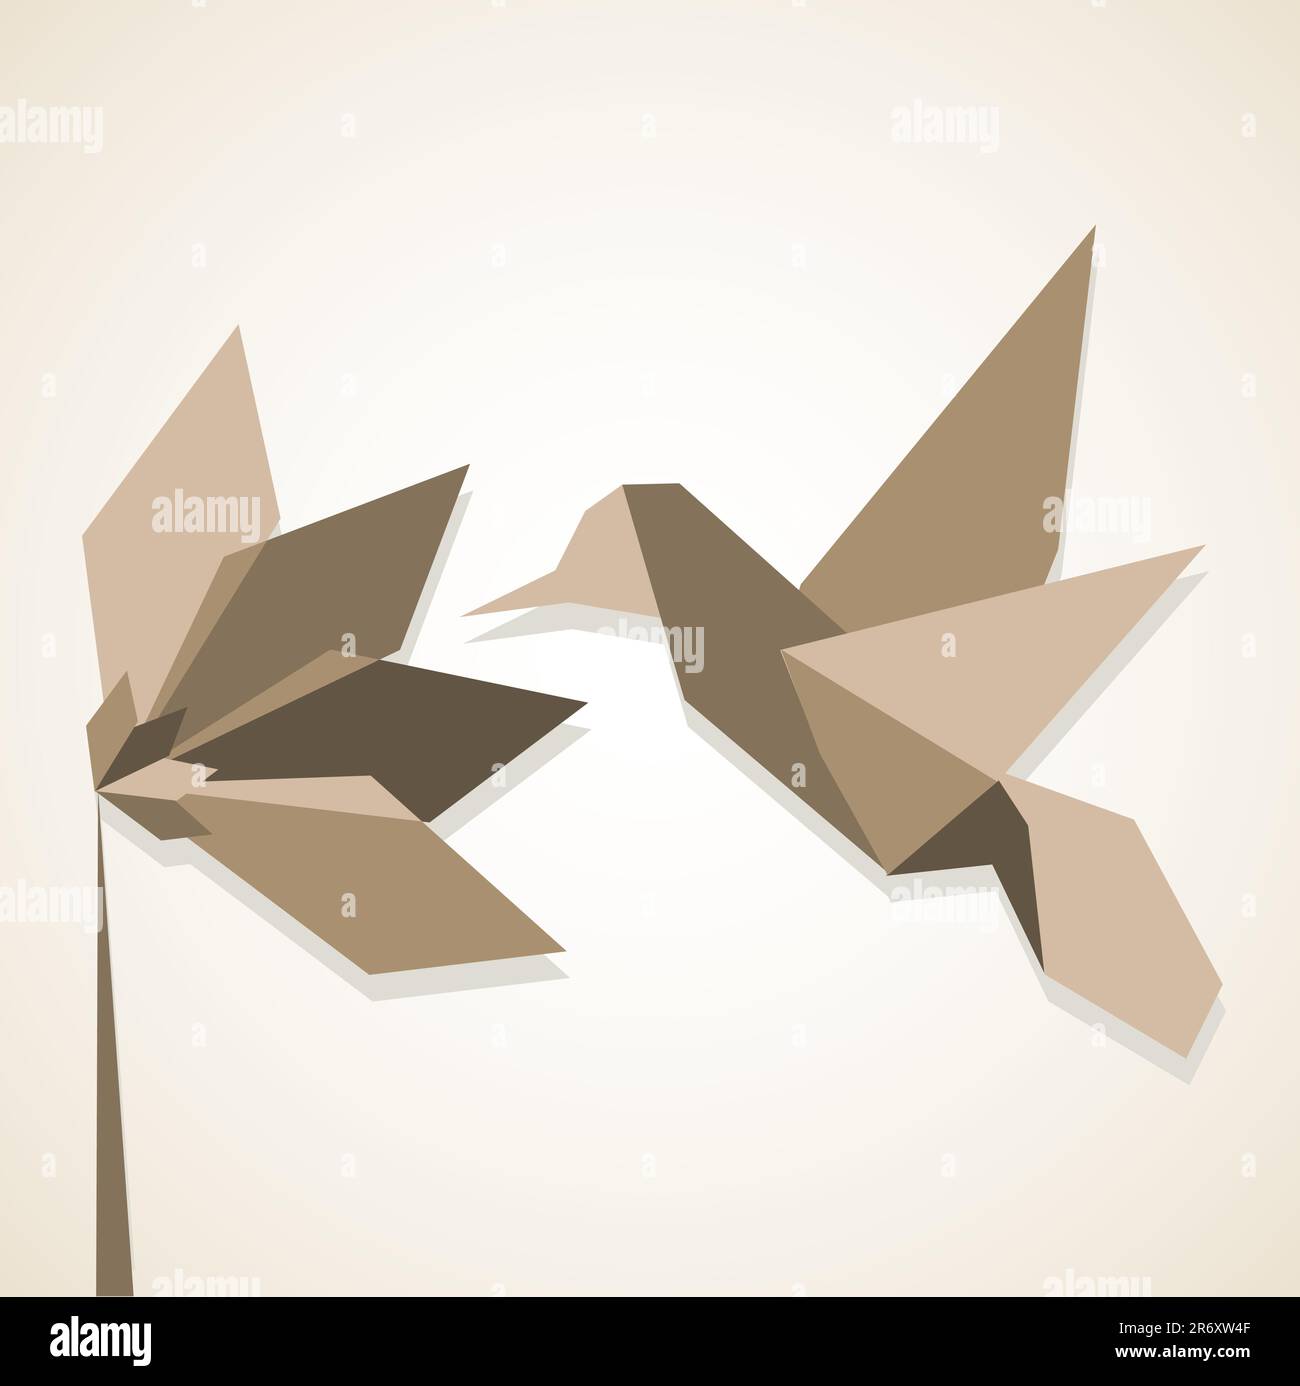 Origami monocromatici di colori marrone colibrì e fiori. File vettoriale disponibile. Illustrazione Vettoriale